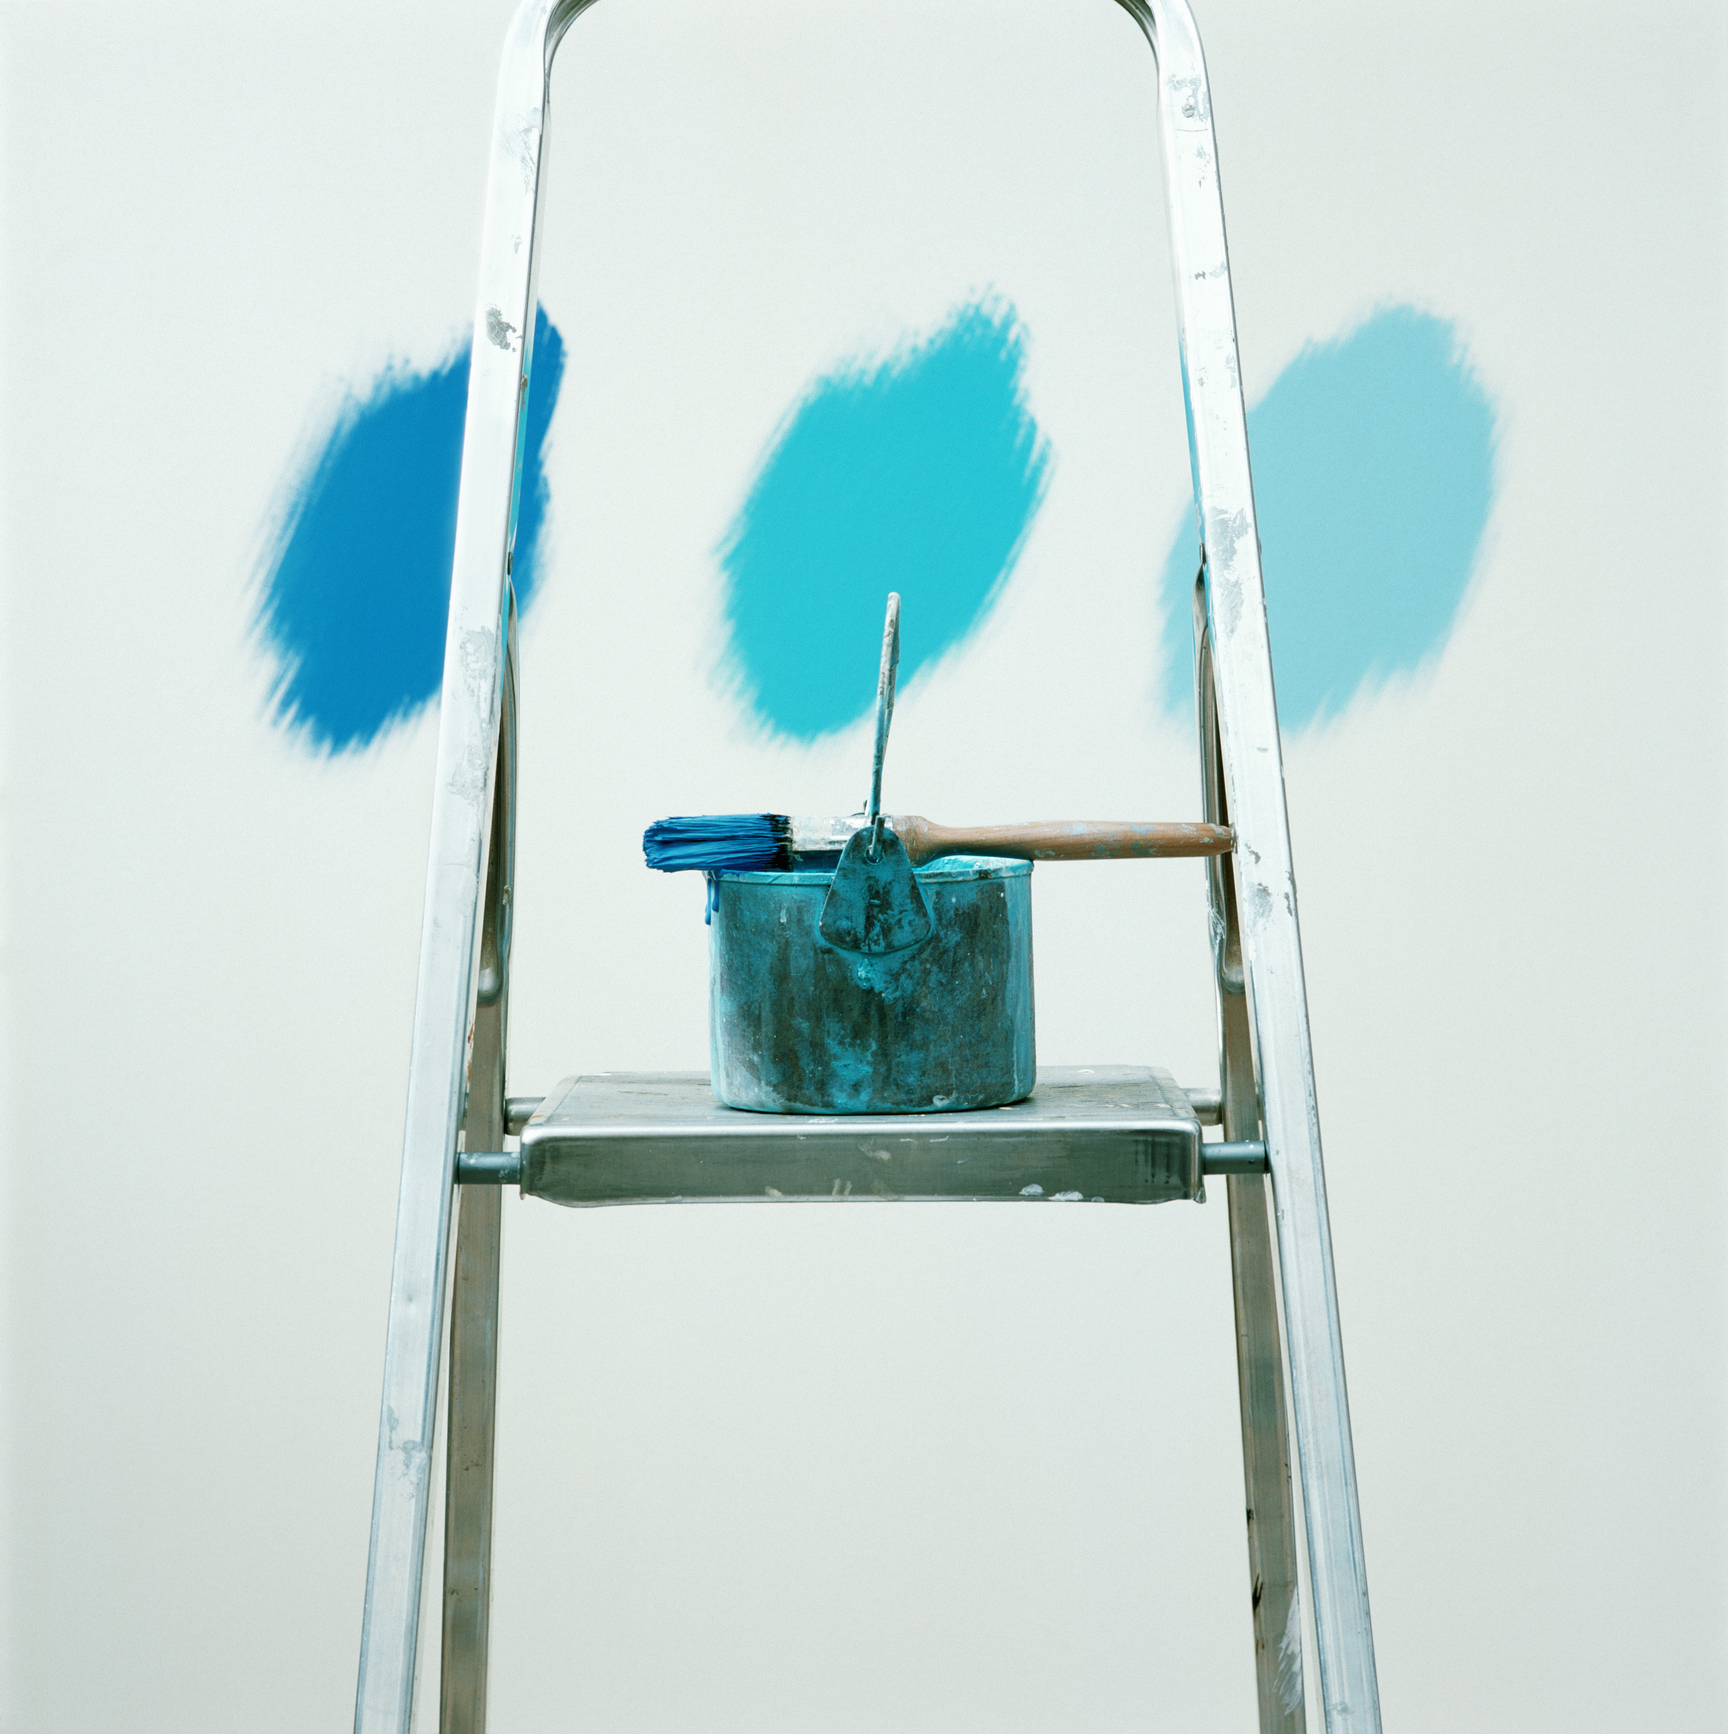 Balde de tinta e pincel, molhado com tinta azul, sobre uma escada. Na parede, 3 tons de azul.